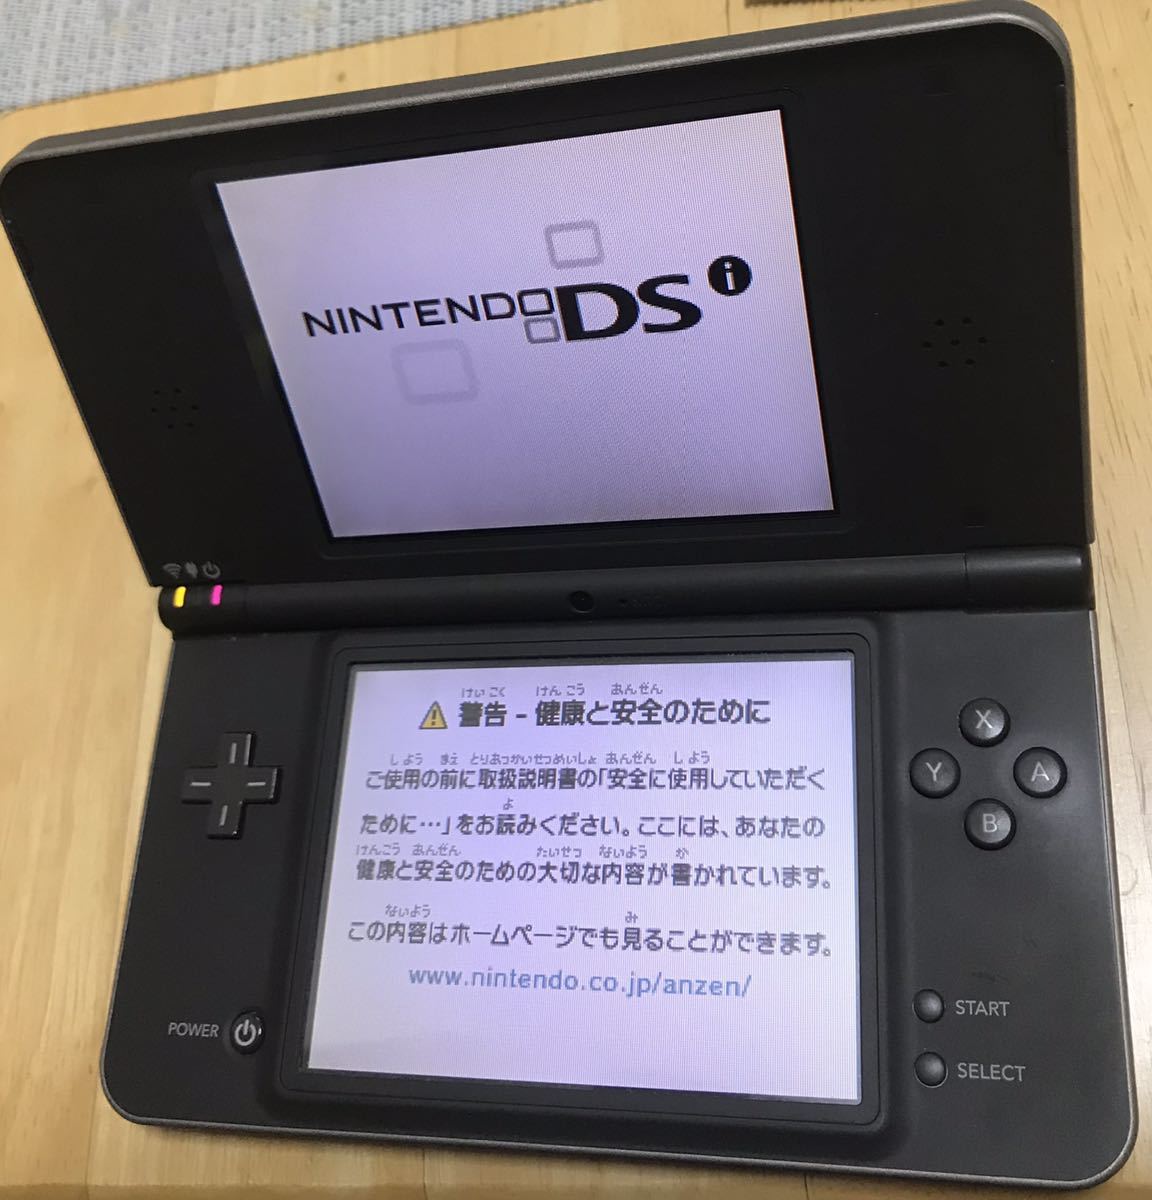 ライトブラウン/ブラック 【新品】Nintendo DSi LL ダークブラウン